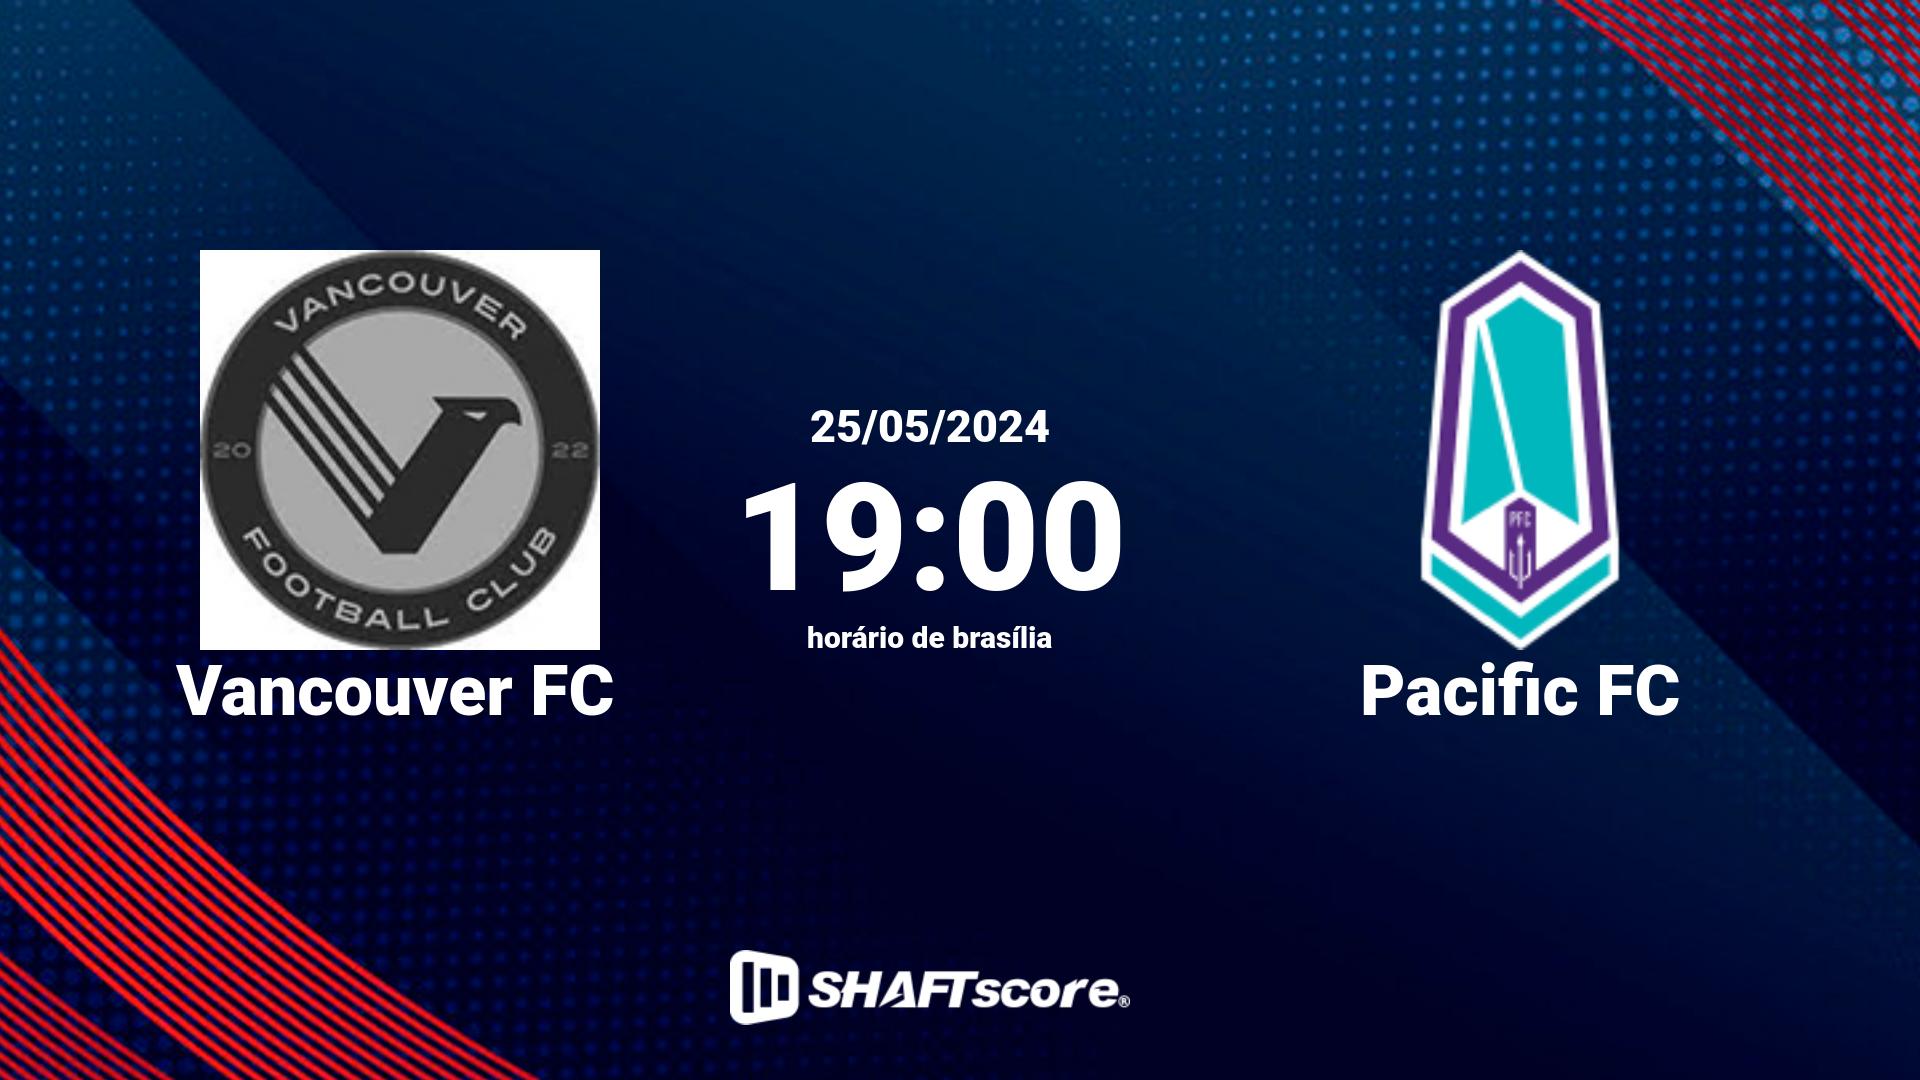 Estatísticas do jogo Vancouver FC vs Pacific FC 25.05 19:00